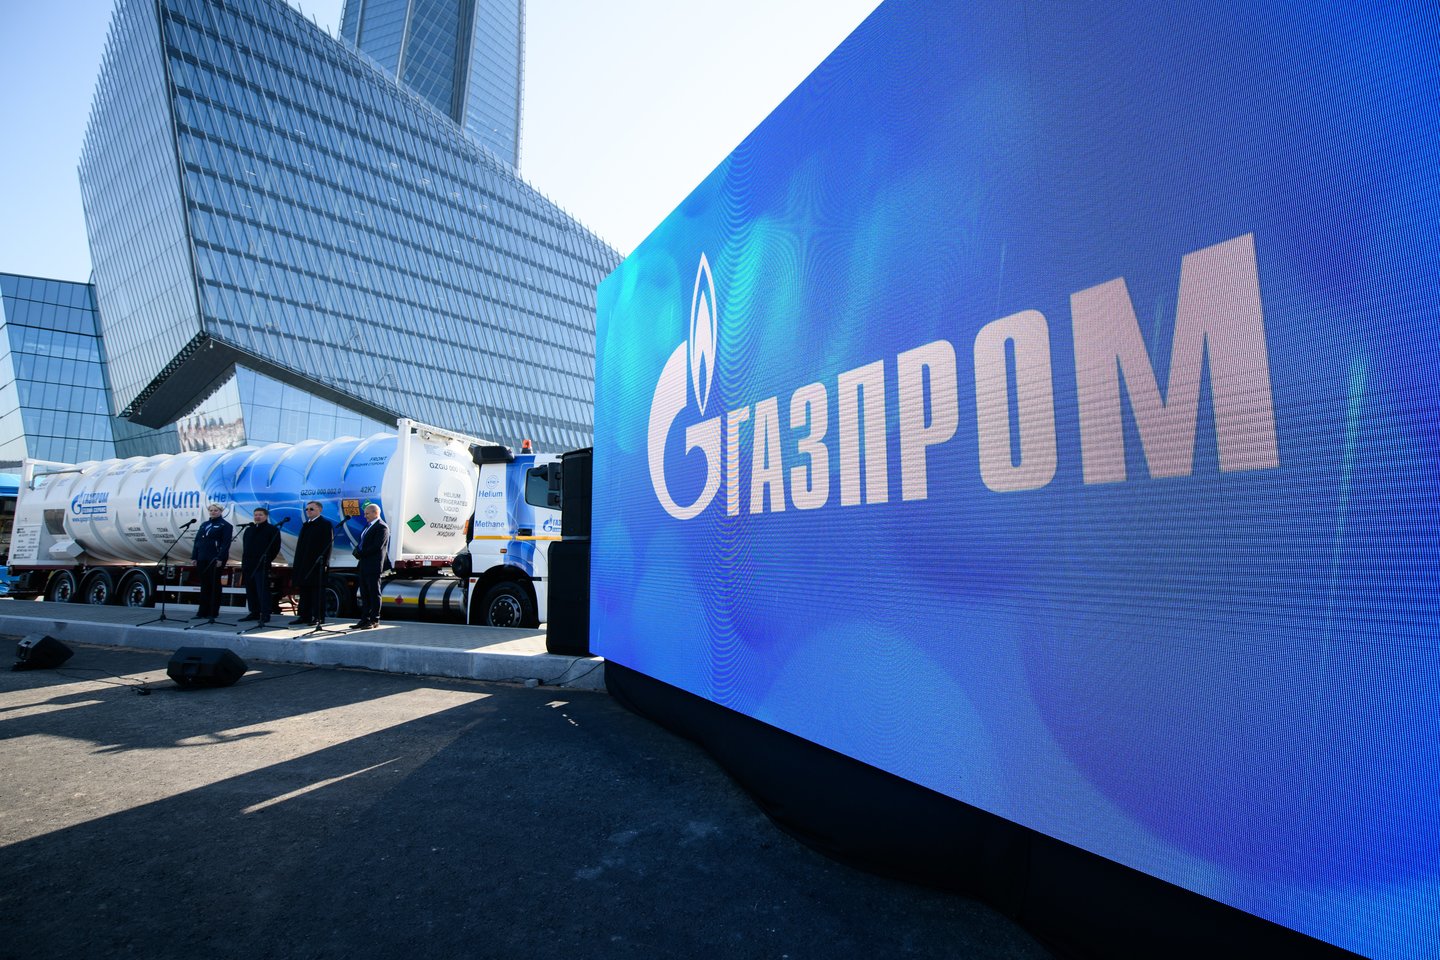 Verslas sako, kad bet koks sprendimas riboti ekonominį aktyvumą siekiant mažinti rusiškų dujų vartojimą Europoje turės katastrofiškų padarinių.<br>Gazprom.com asociatyvi nuotr.